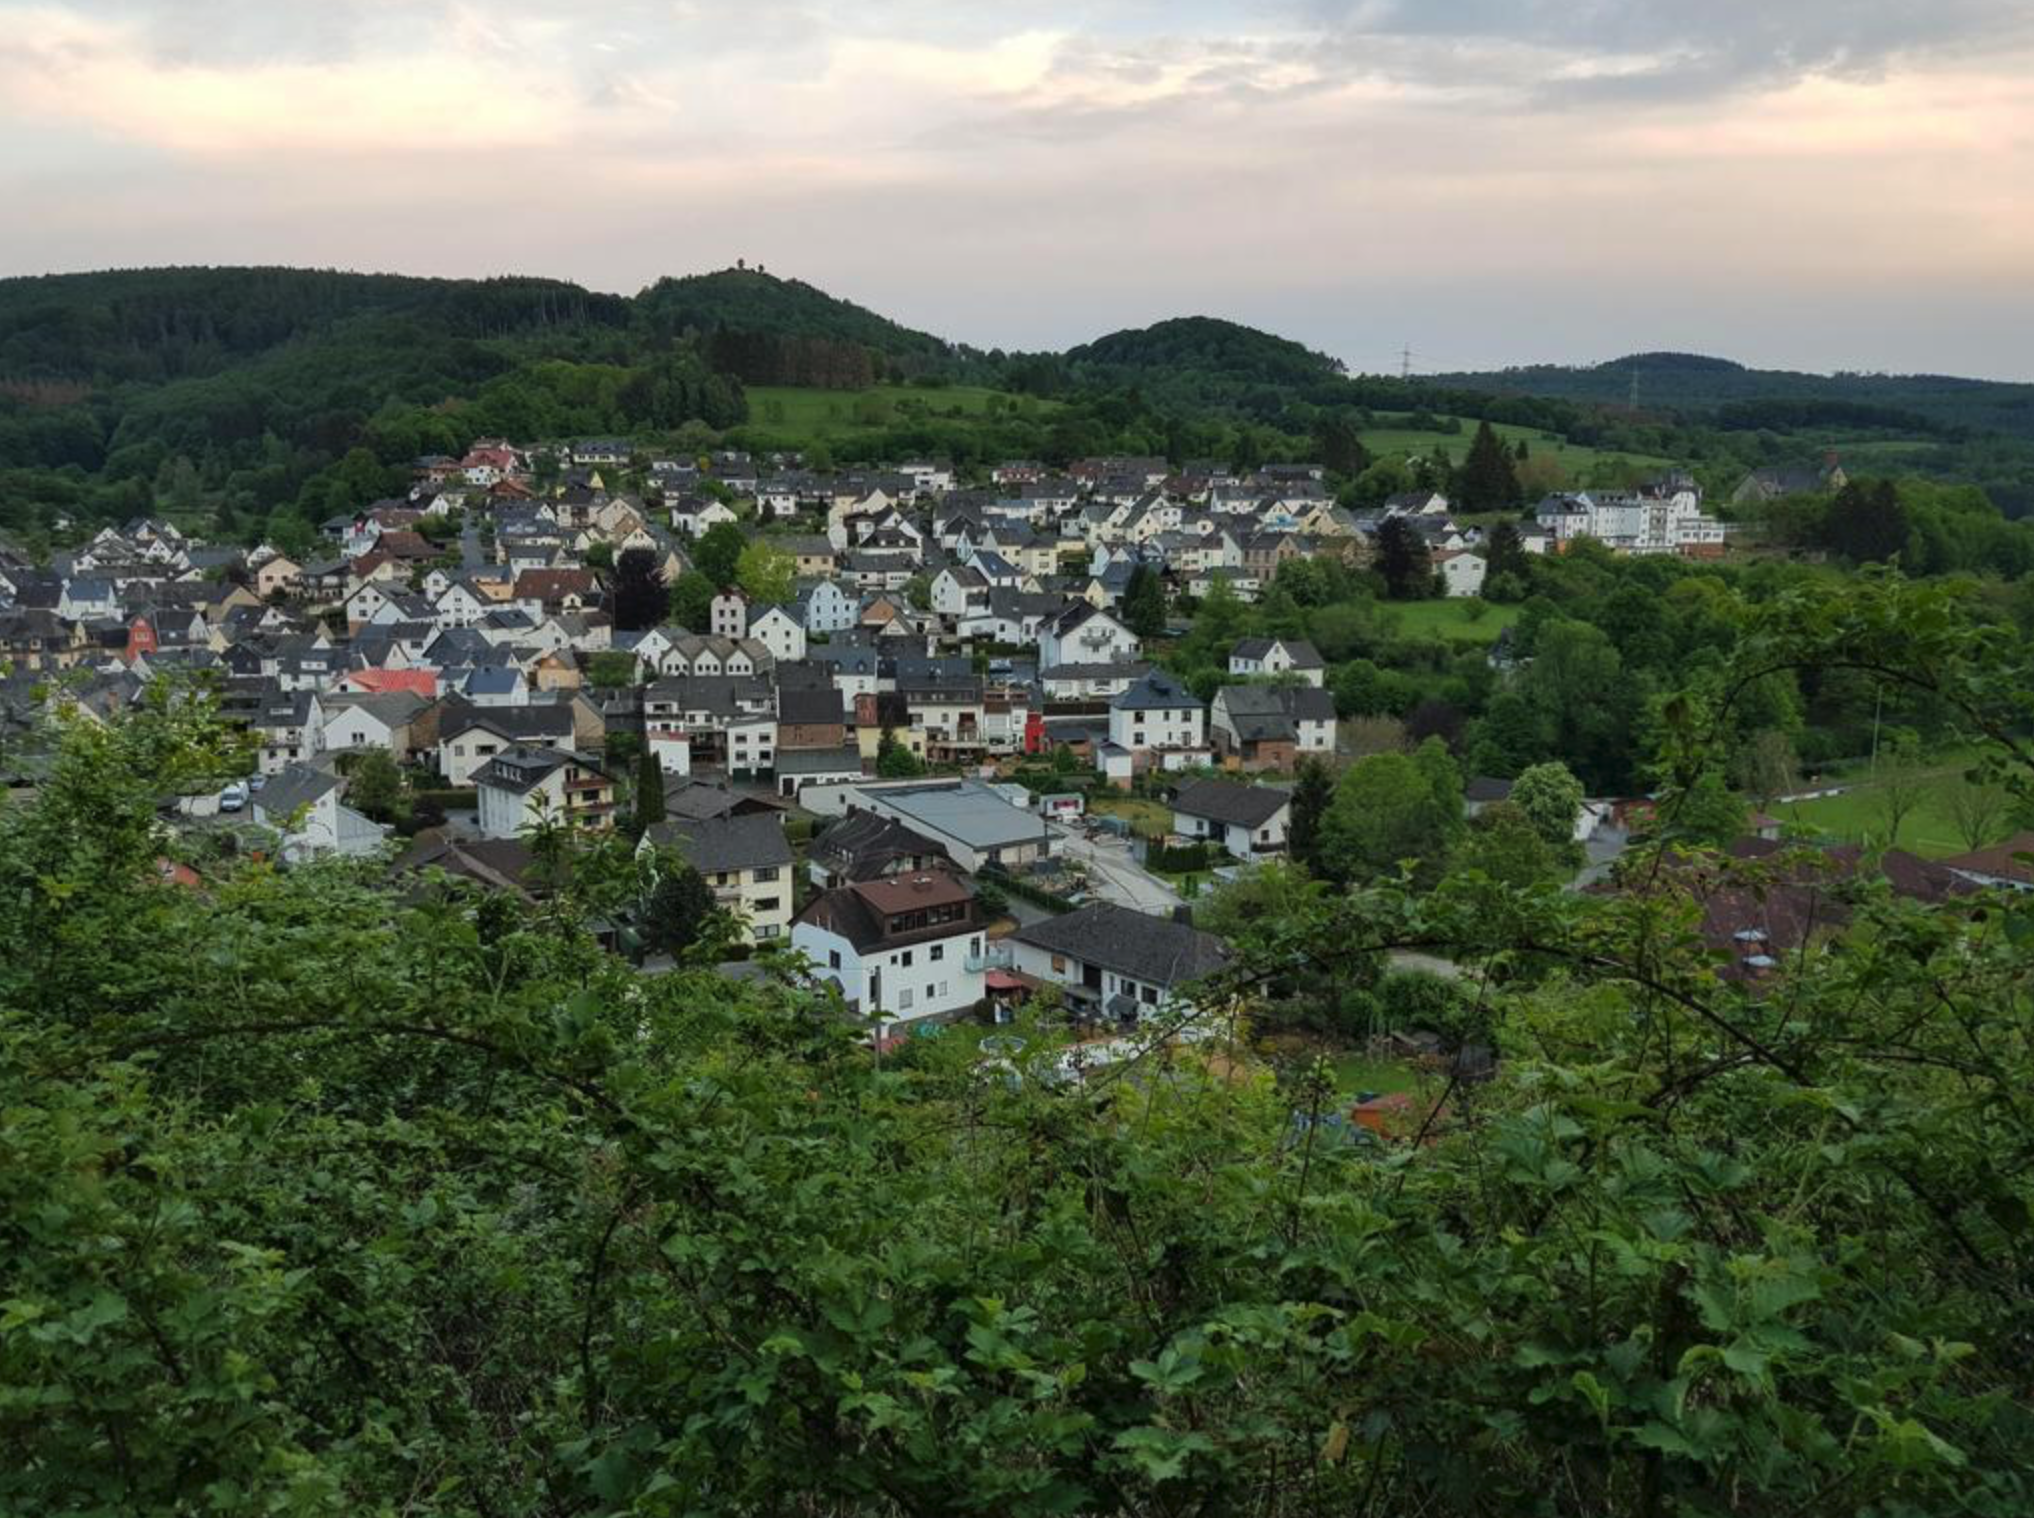 Gemeinderat Arzbach beschließt Teilnahme am Wettbewerb “Unser Dorf hat Zukunft”